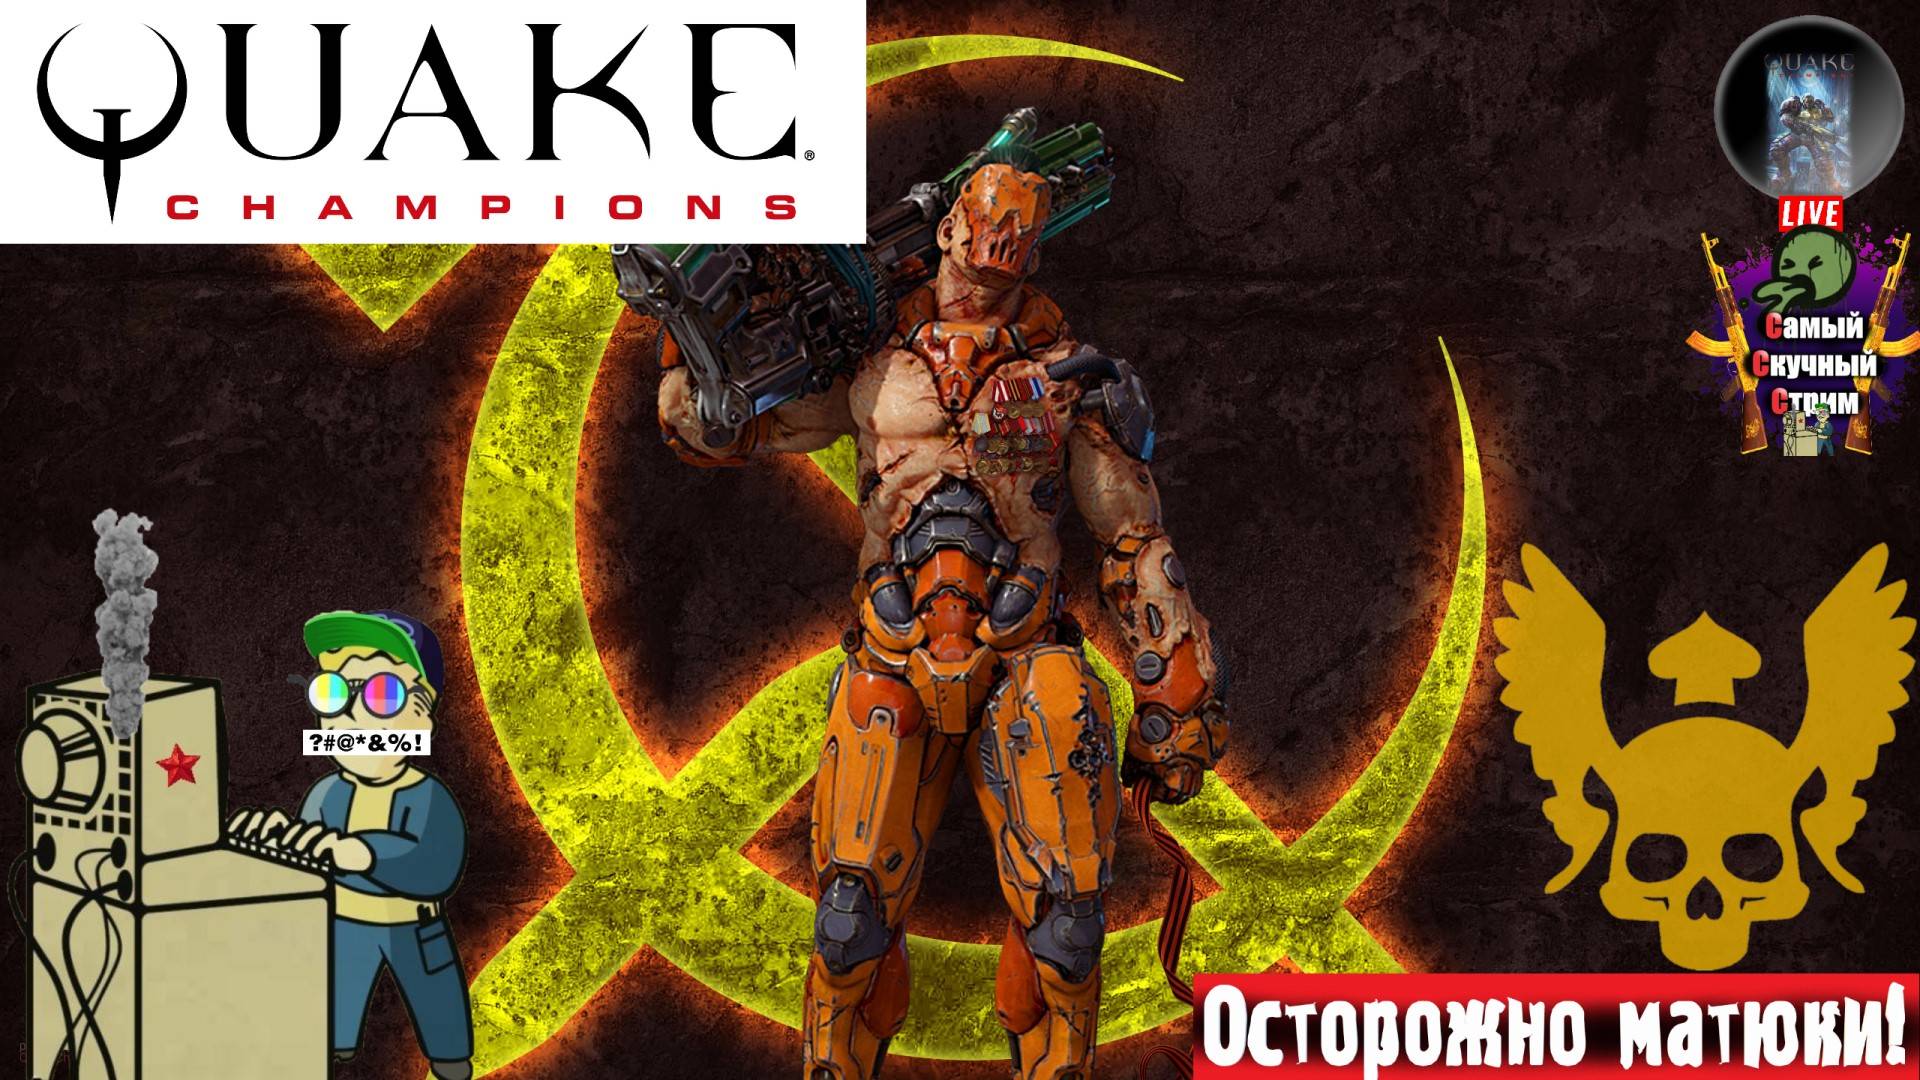 Quake Champions | Квейк Чампионс Квага | Визор  #quake #стрим #квейк